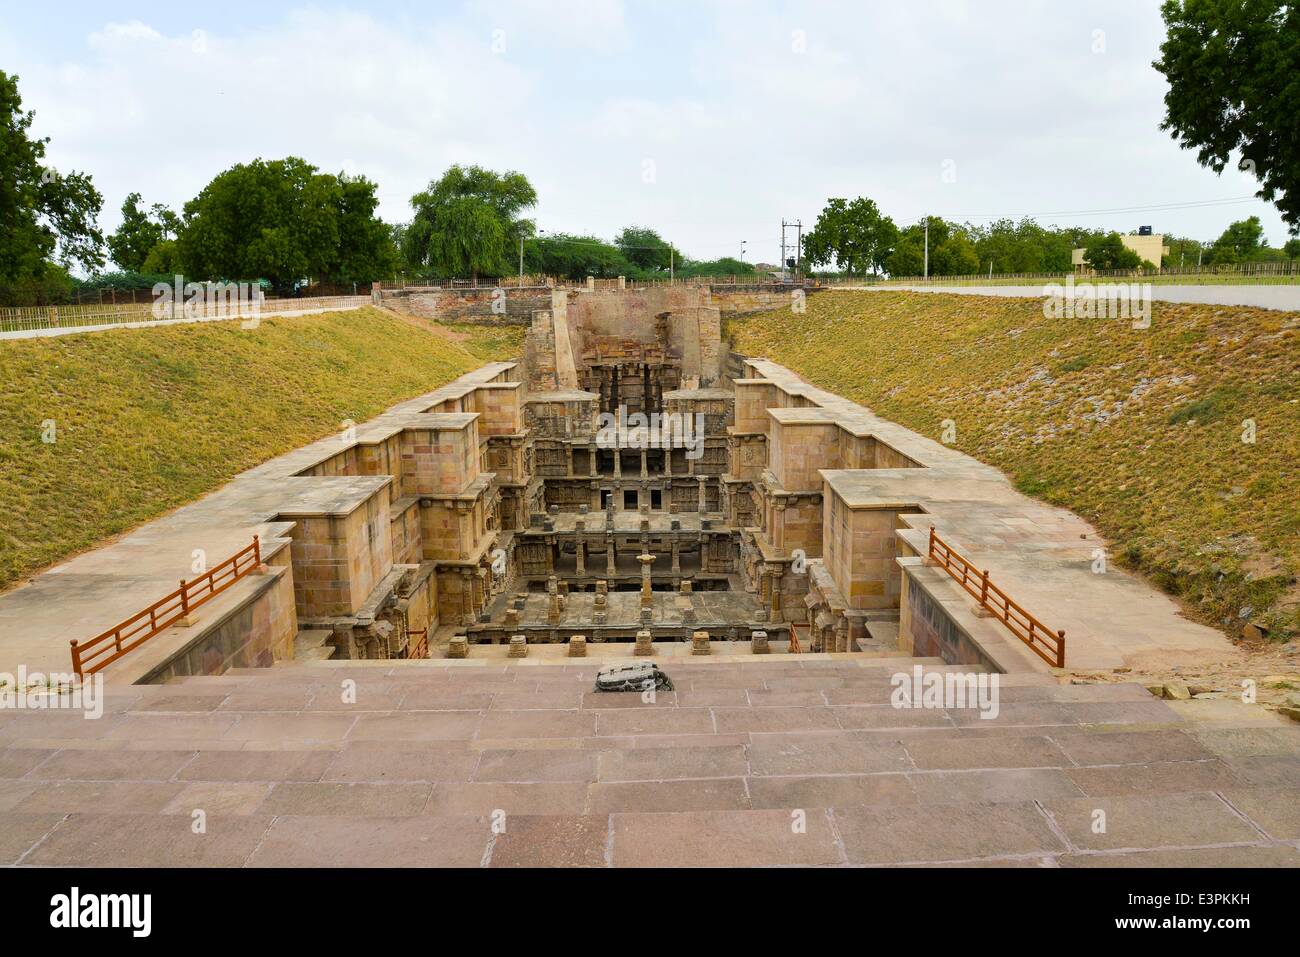 Le drainage de l'eau de 'Rani-ki-Vav'. Rani ki Vav est l'un des meilleurs cages en Inde. Il s'agit d'une cage au Gujarat, construite au 11e siècle en mémoire du Roi Bhimdev I de la dynastie Solanki. La cage a été approuvé par l'UNESCO comme site du patrimoine mondial pour son exceptionnel exemple de développement technologique dans l'utilisation des ressources en eau du sol. (Photo de Nisarg/Lakhamani Pacific Press) Banque D'Images